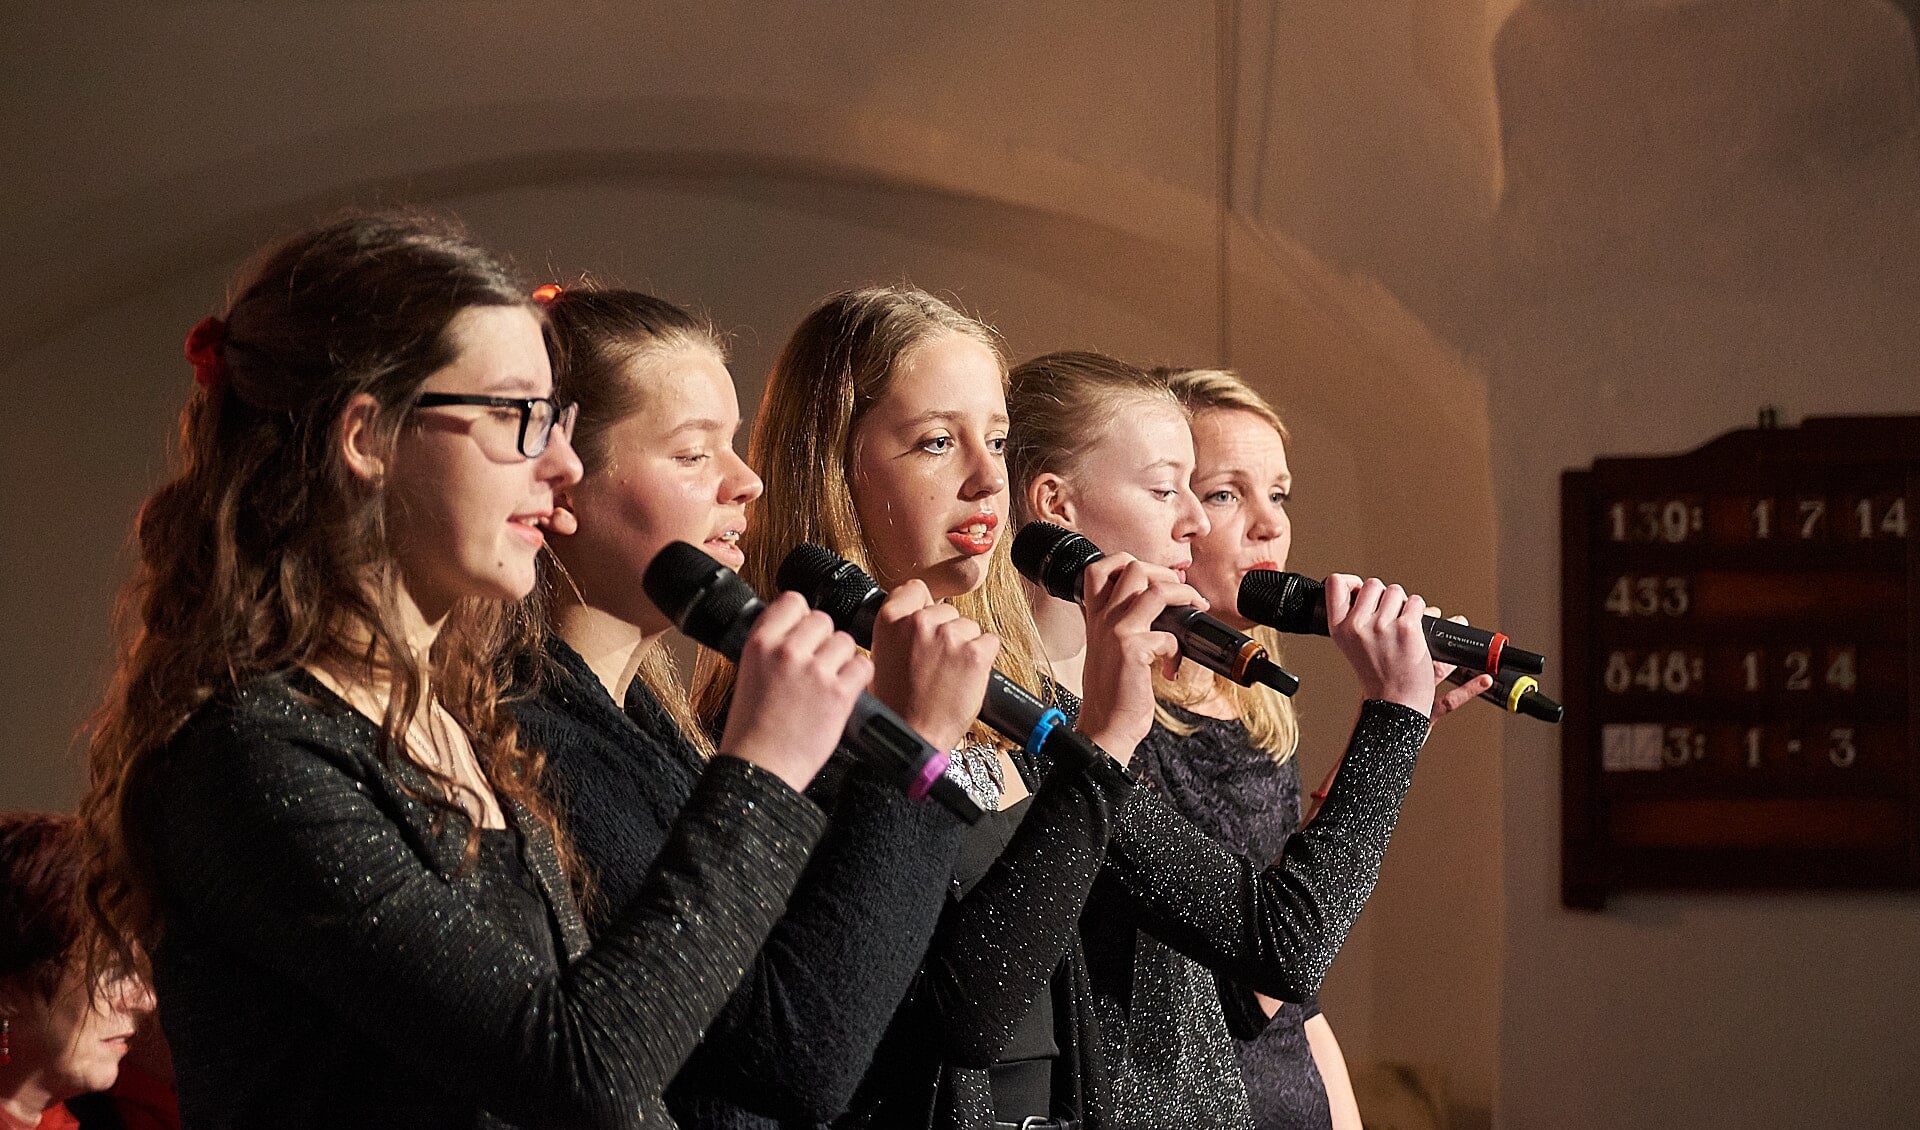 Hartroerend was het prachtige lied 'Light a candle' dat door de vocalisten van Plica Vocalis werd gezongen. Foto: Martie Leusink.